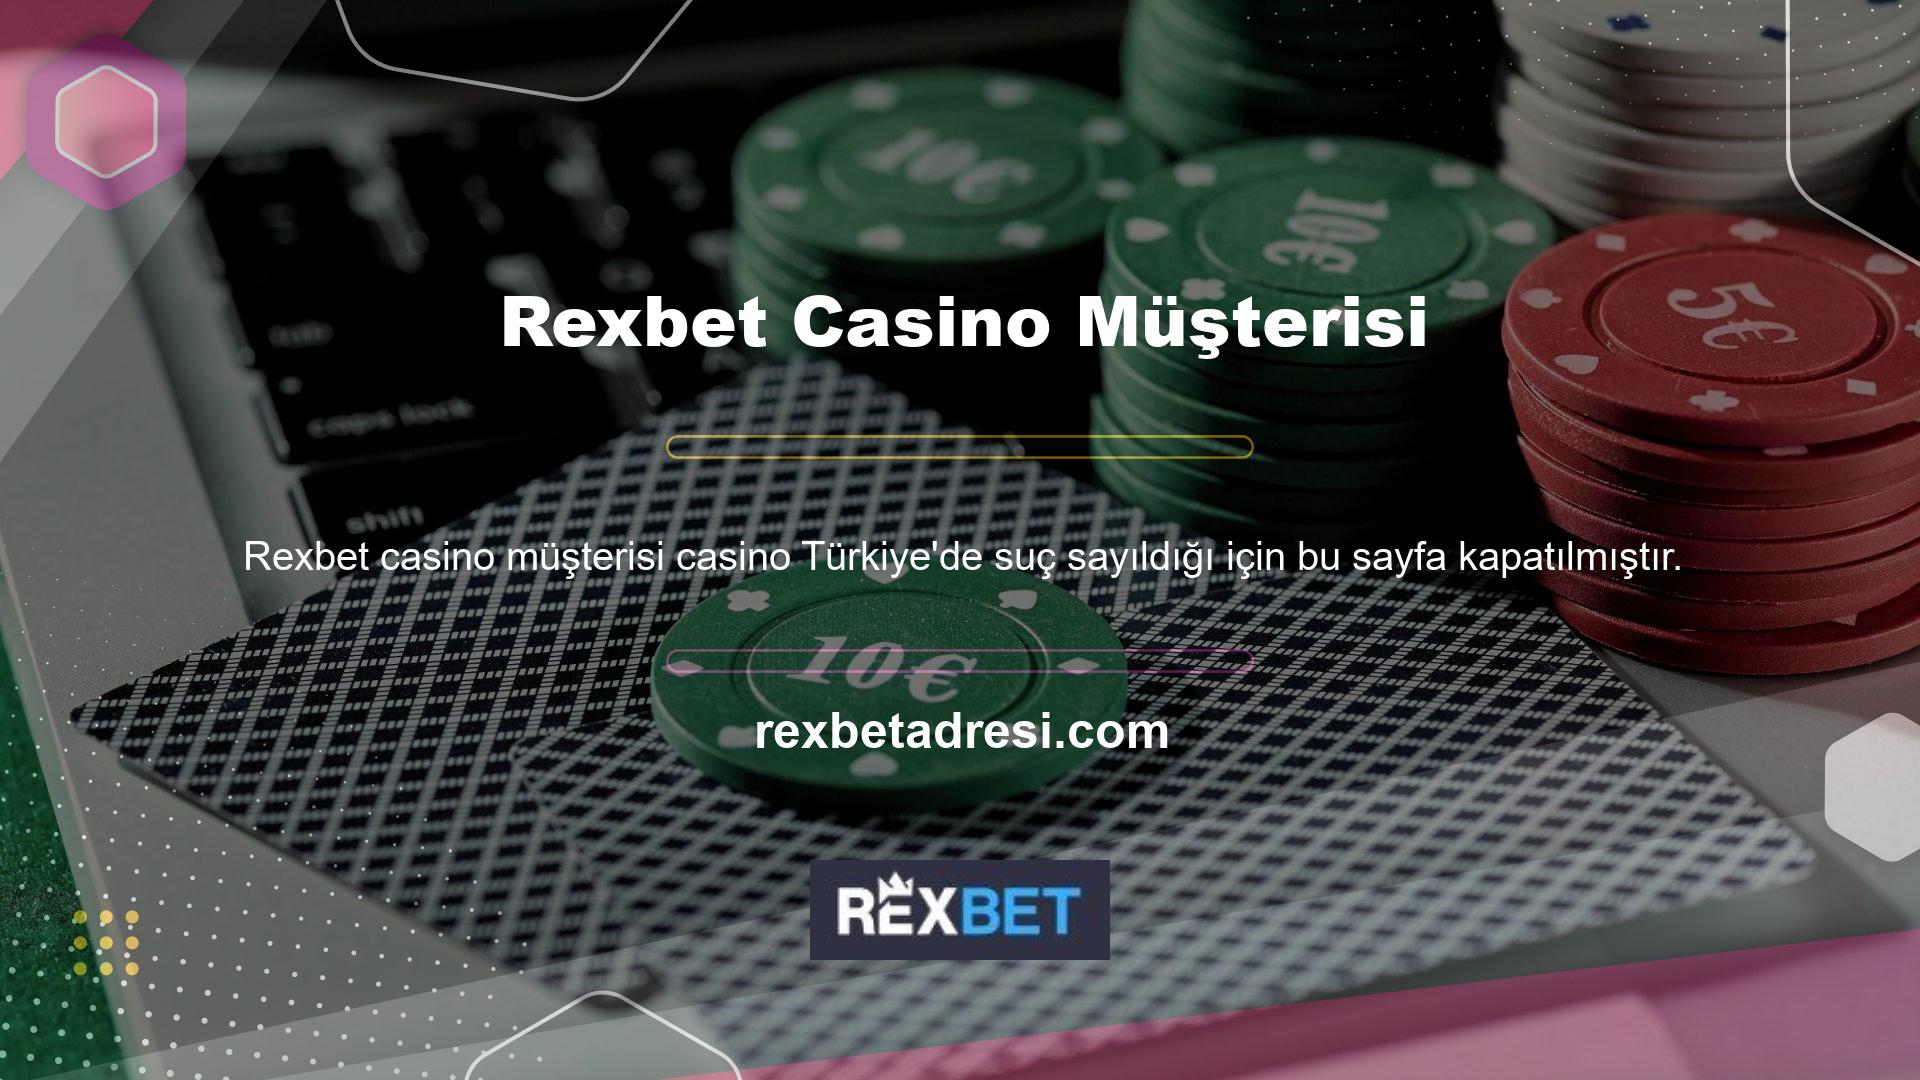 Rexbet Casino'daki müşteri bahisleri dahil olmak üzere sitedeki tüm listelemeler BTK erişimine kapalıdır